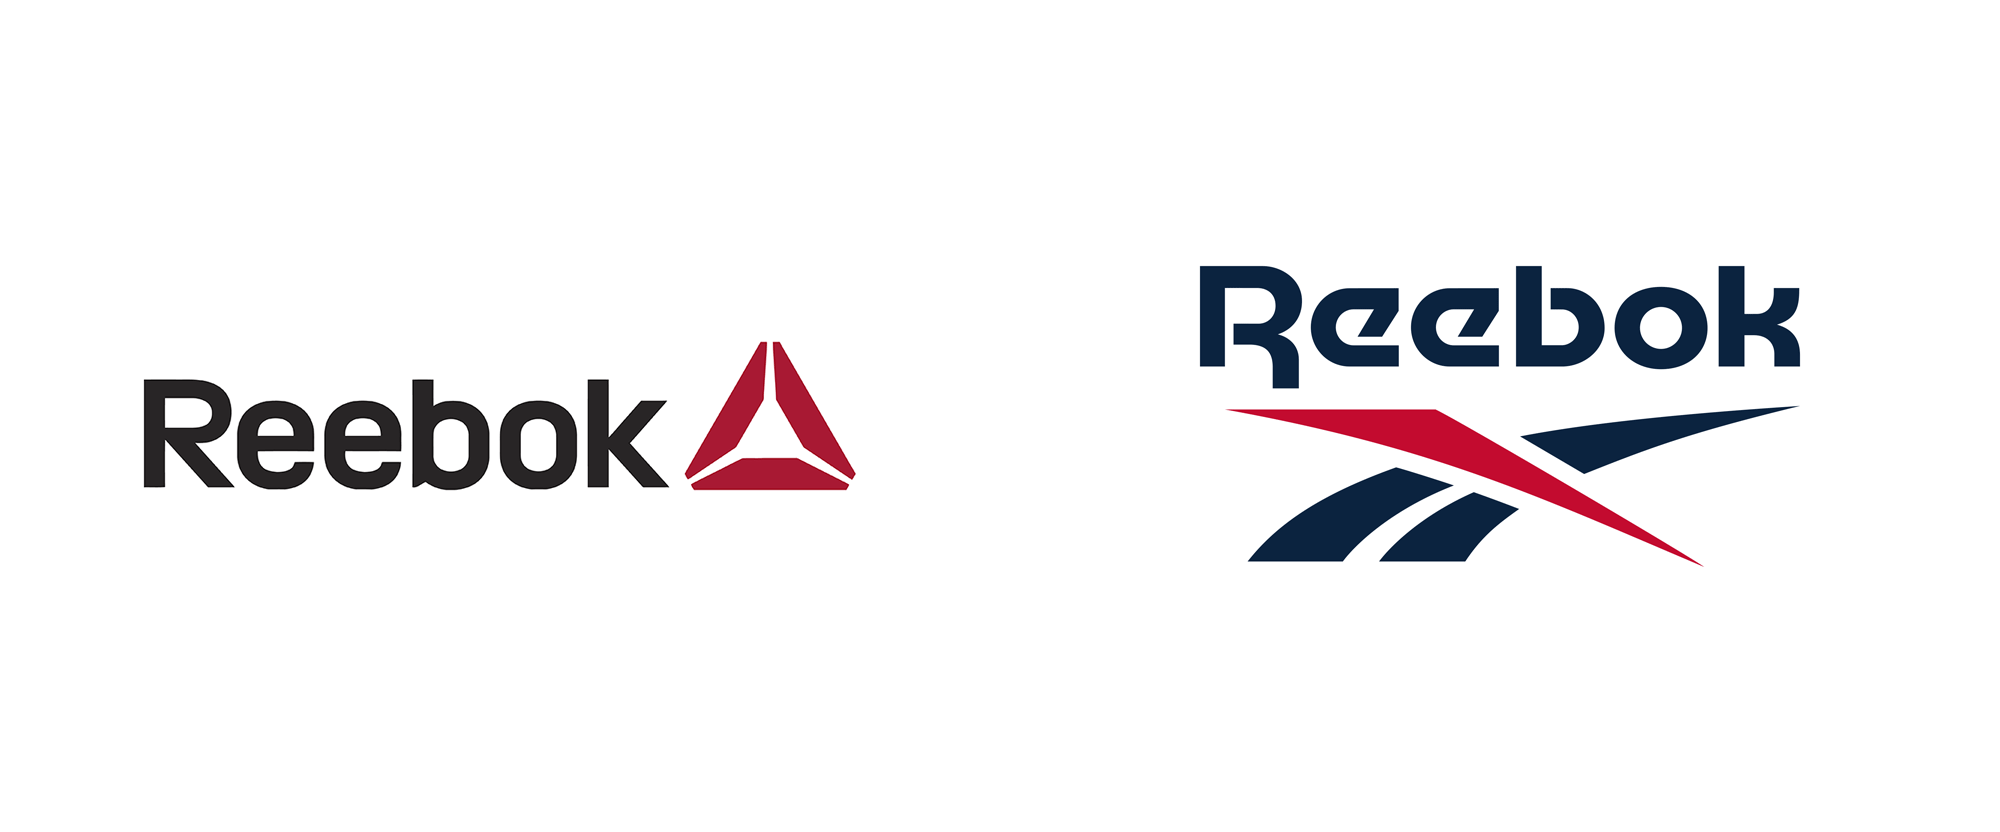 锐步运动品牌logo设计 力英品牌设计顾问公司